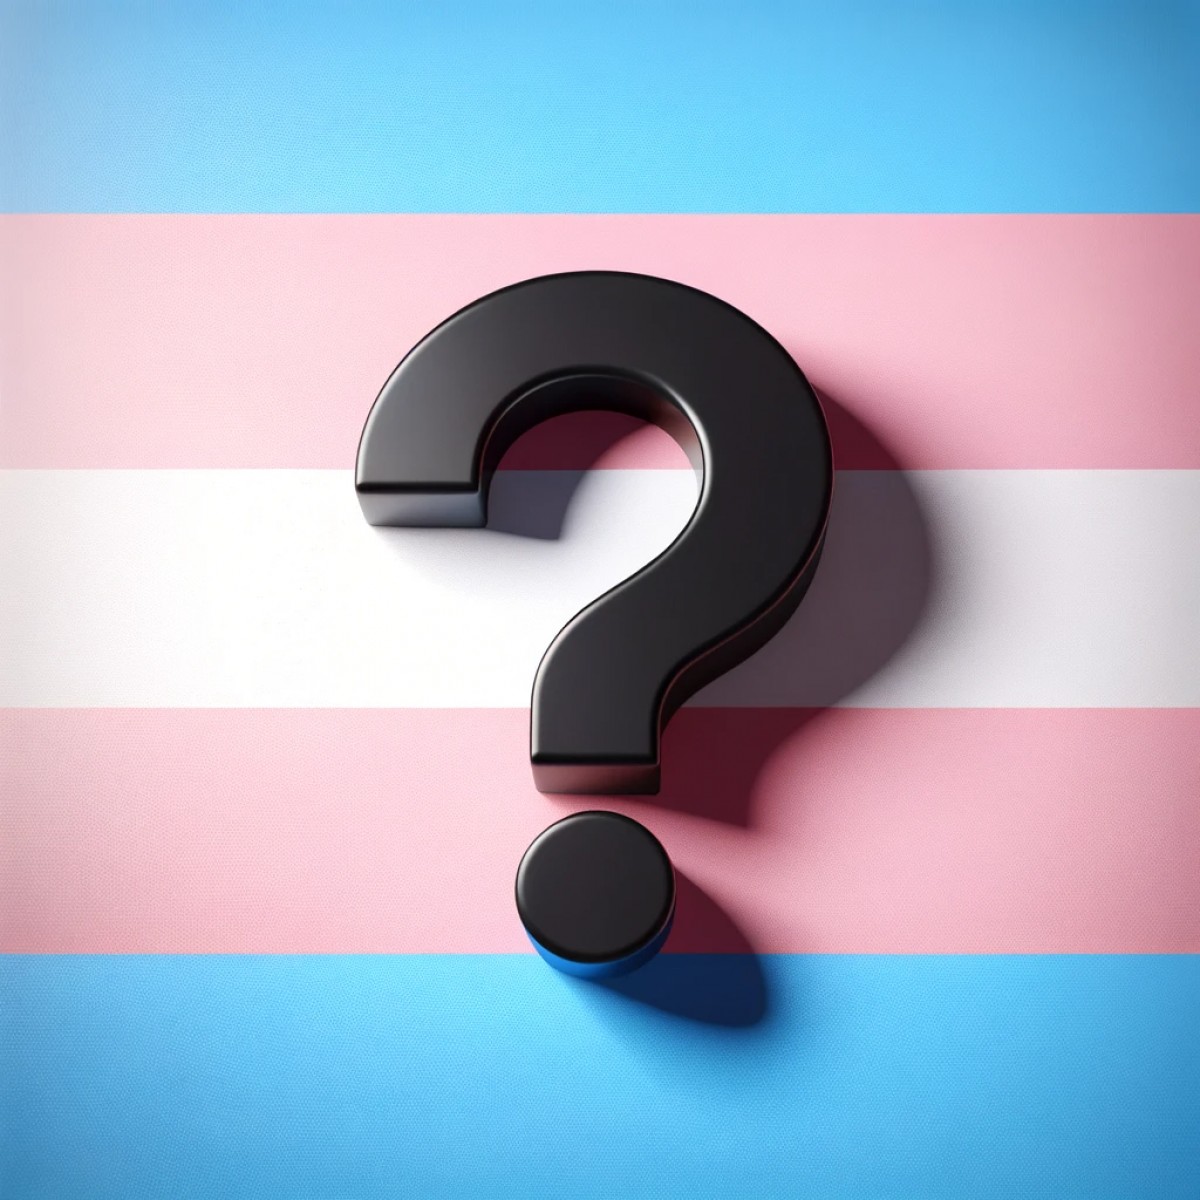 Qu'est-ce que mégenrer une personne transgenre ?